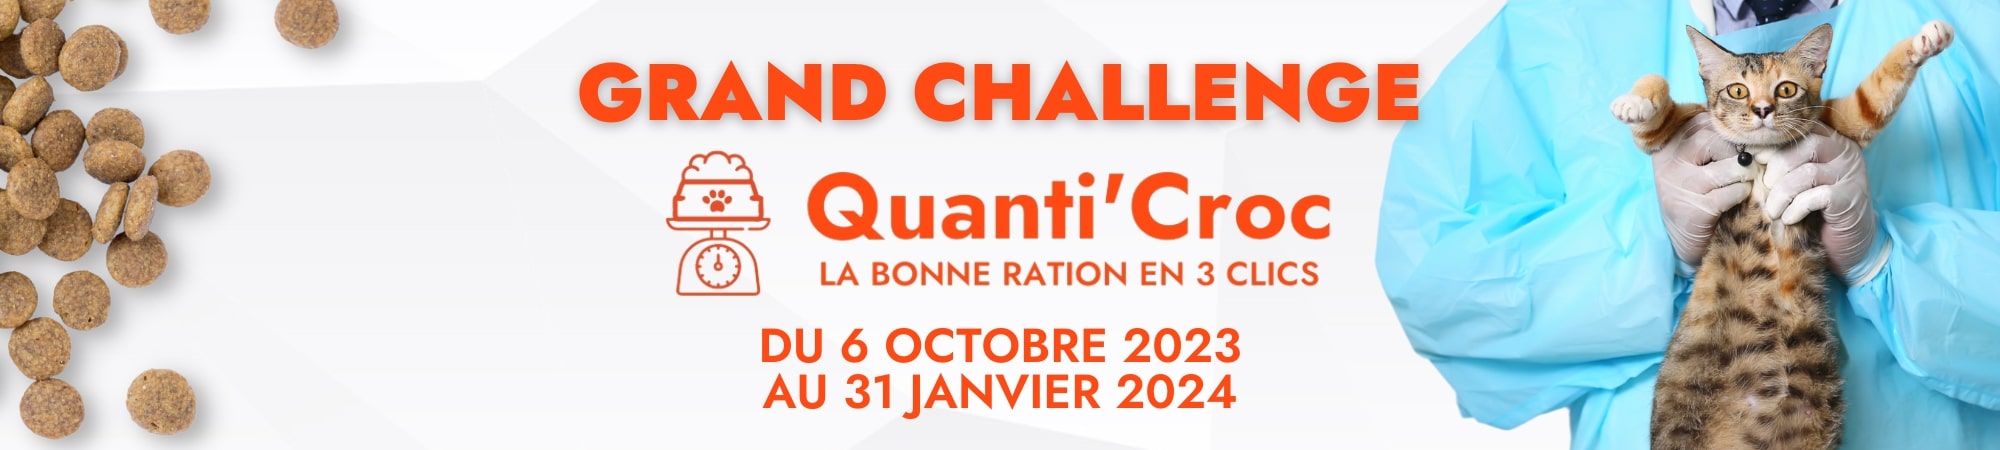 Challenge Quanti'Croc, du 6 octobre au 31 janvier